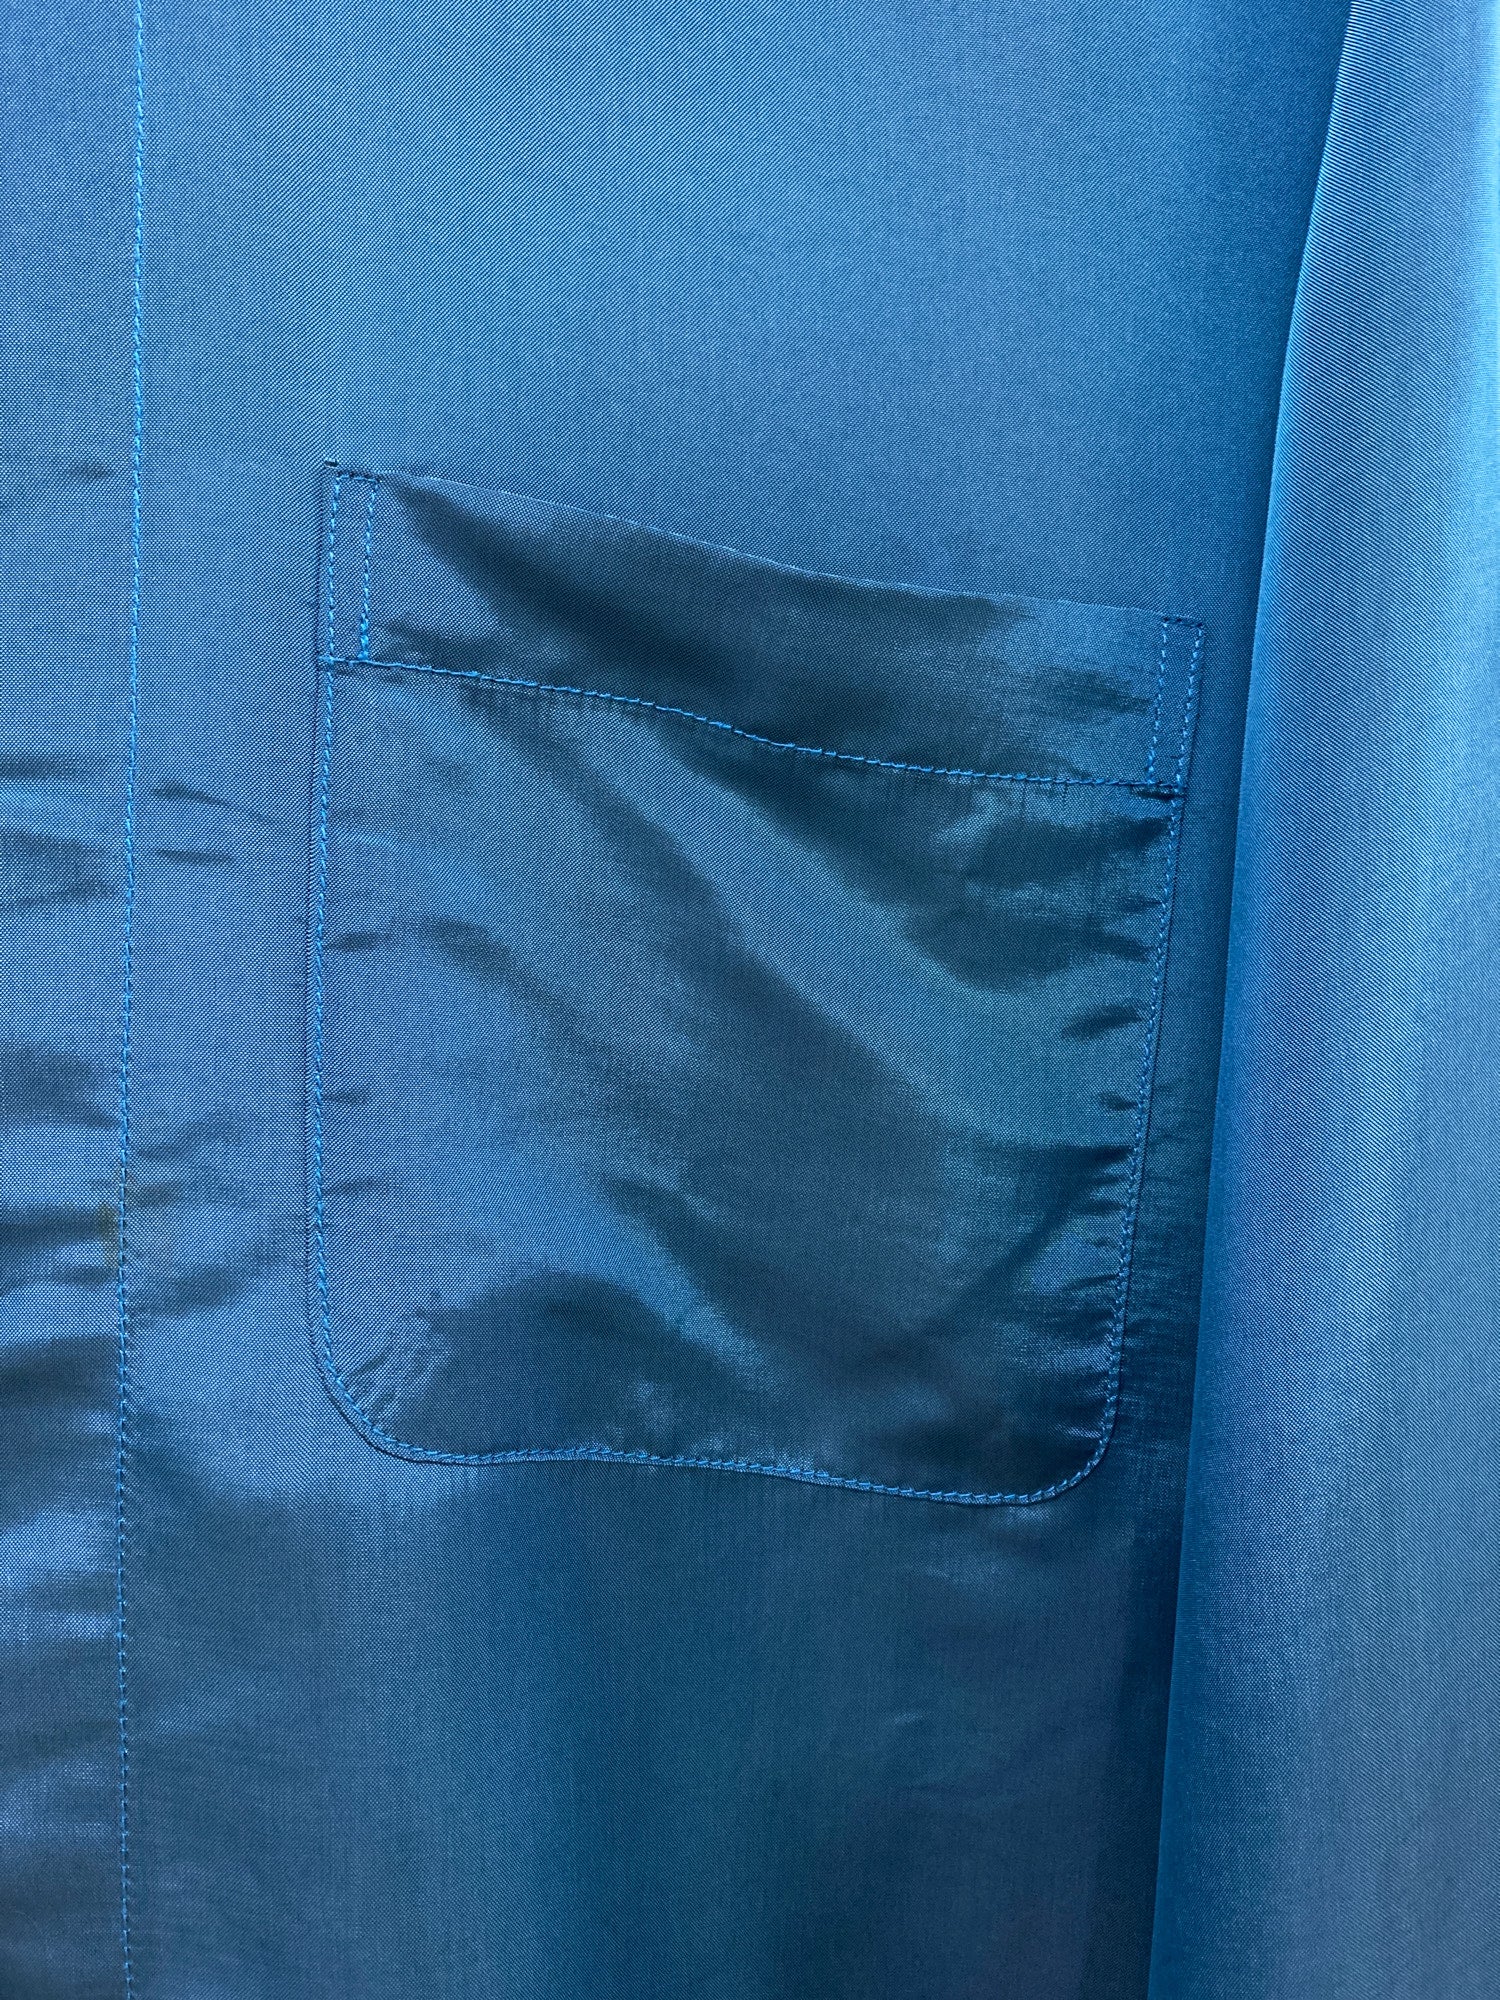 Pashu Shin Hosokawa 1980s blue satin high collar shirt - L M